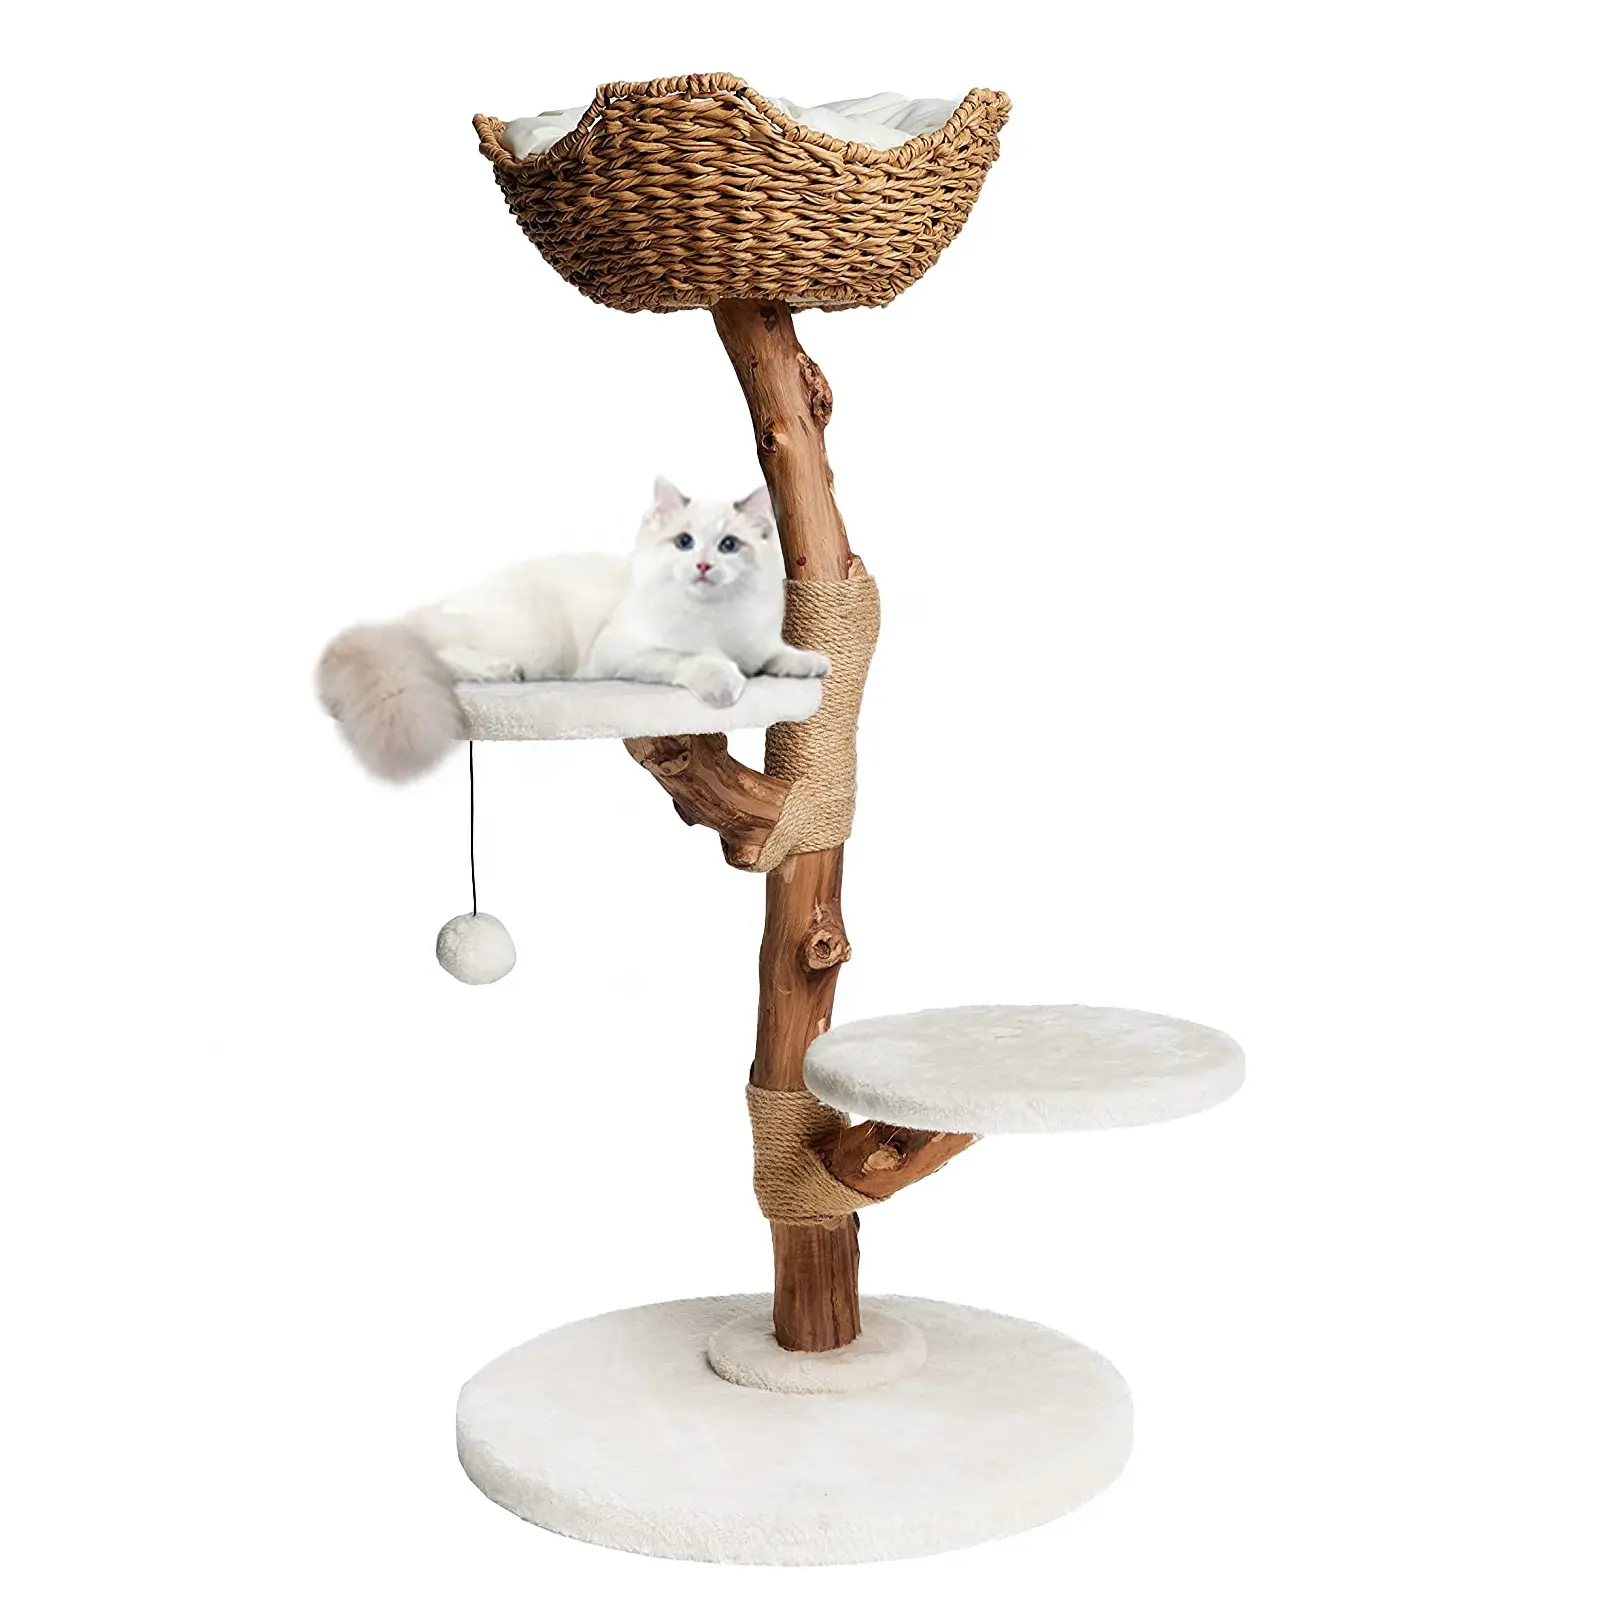 Rustique fait à la main armure corde bois chat Condo arbre gratter tour perchoirs maisons avec poteaux en sisal interactif plume jouet